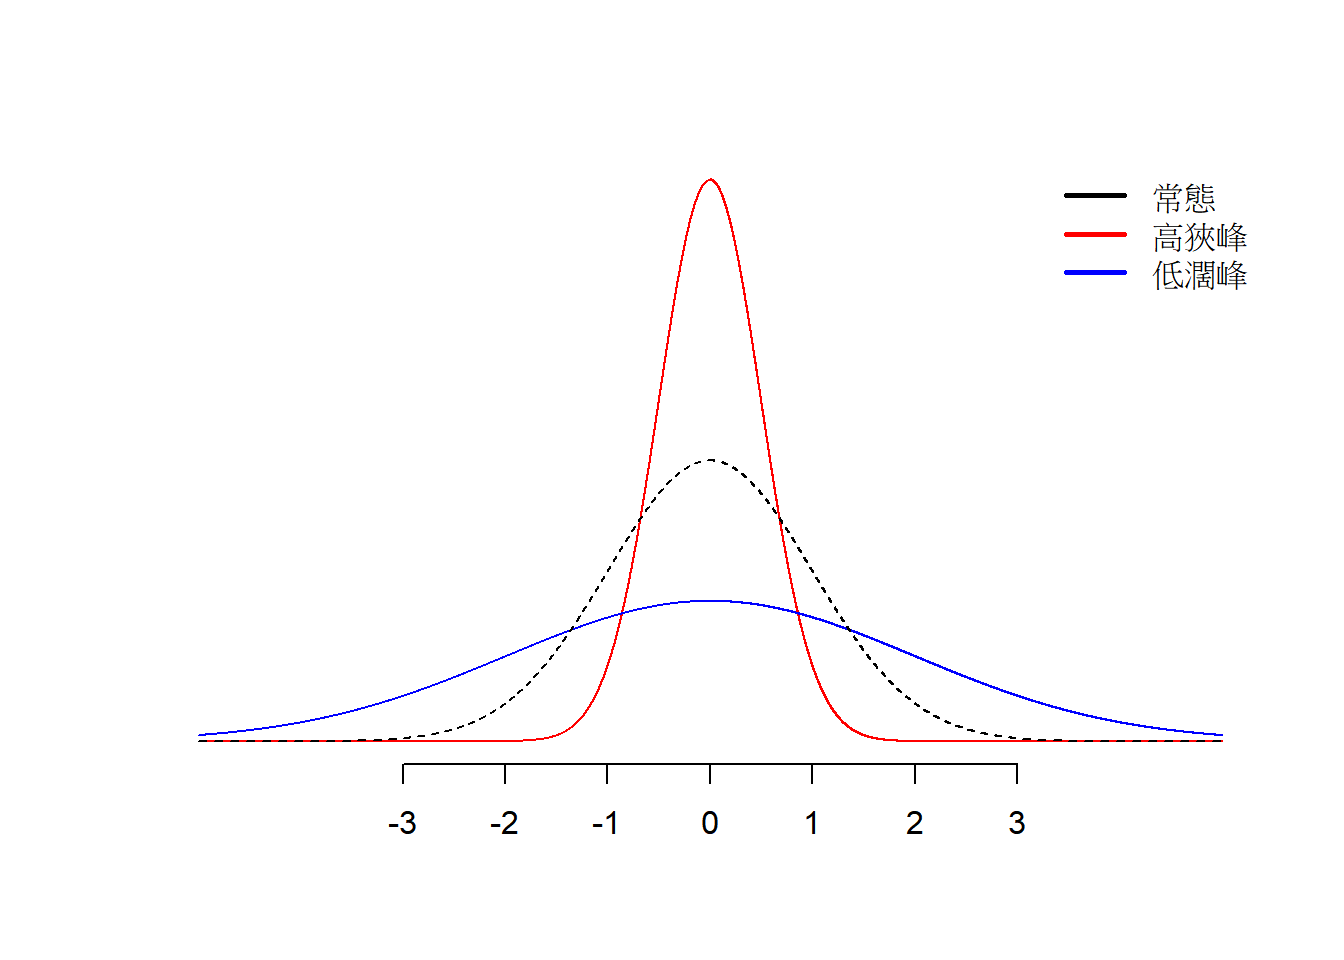 不同峰度的資料型態。黑色曲線是常態分配曲線；紅色曲線為高狹峰；藍色曲線為低闊峰。